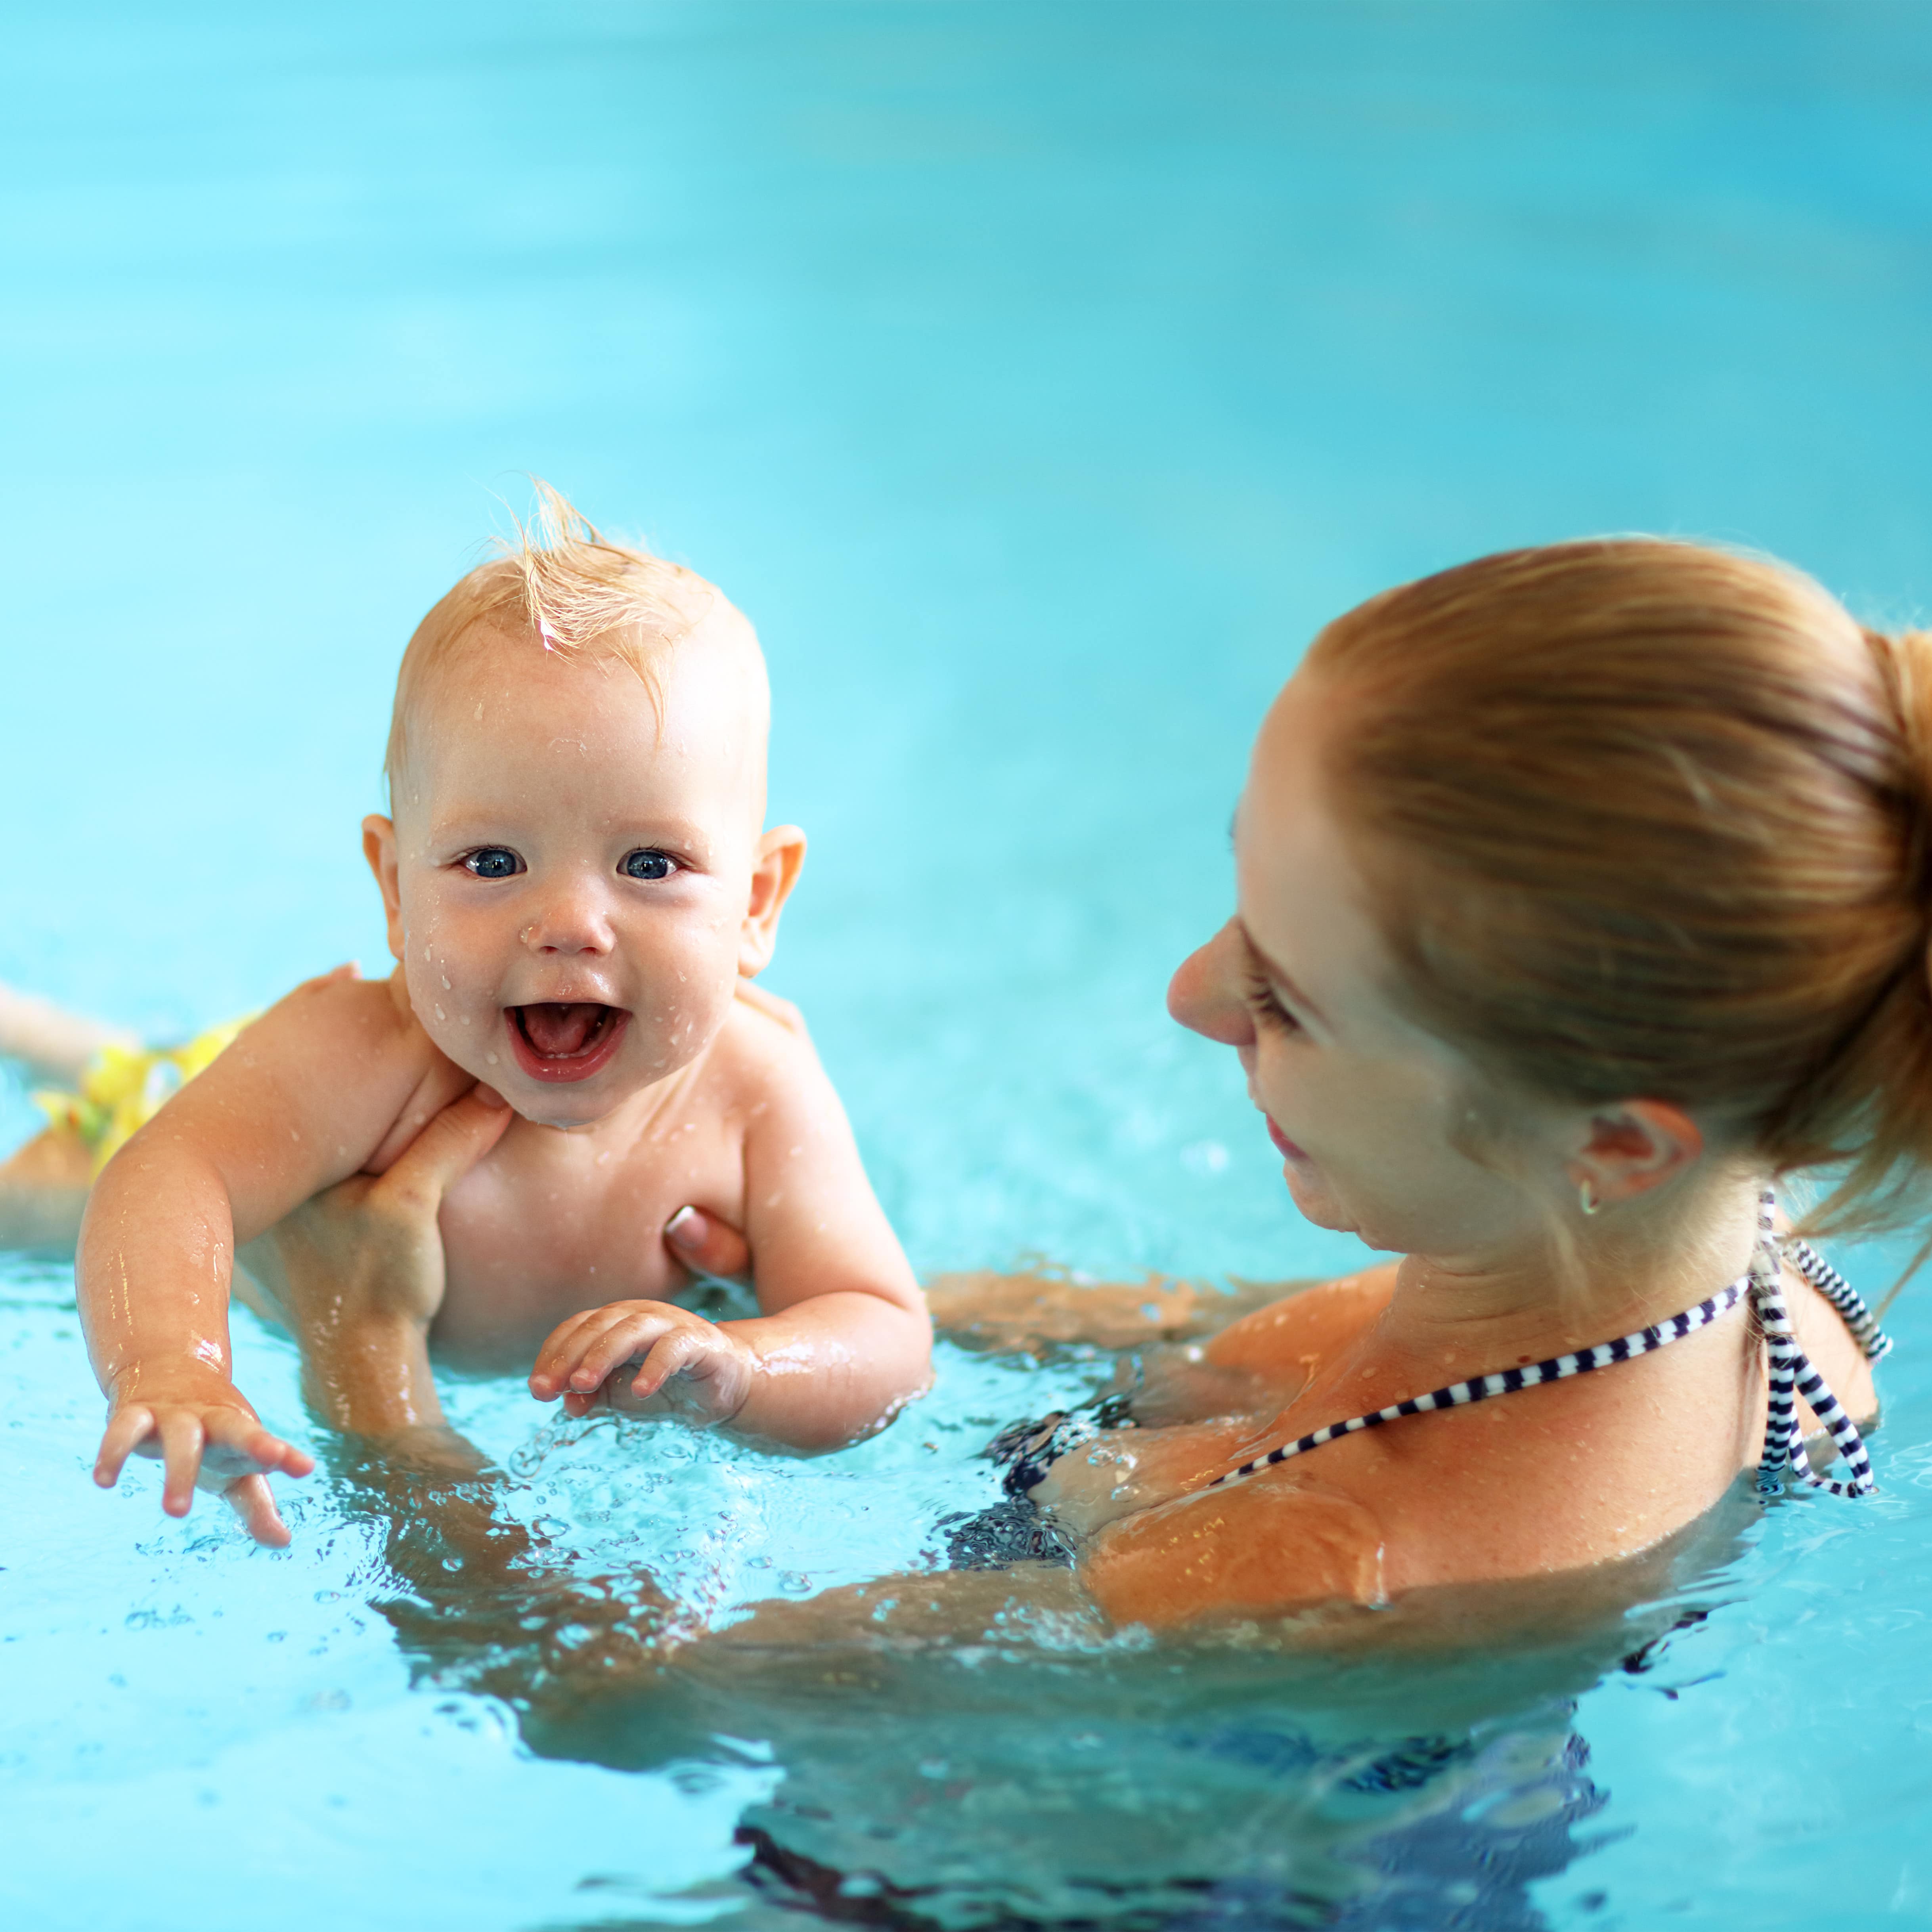 Eine junge Mutter mit ihrem Baby im Pool, das Baby lacht in die Kamera.